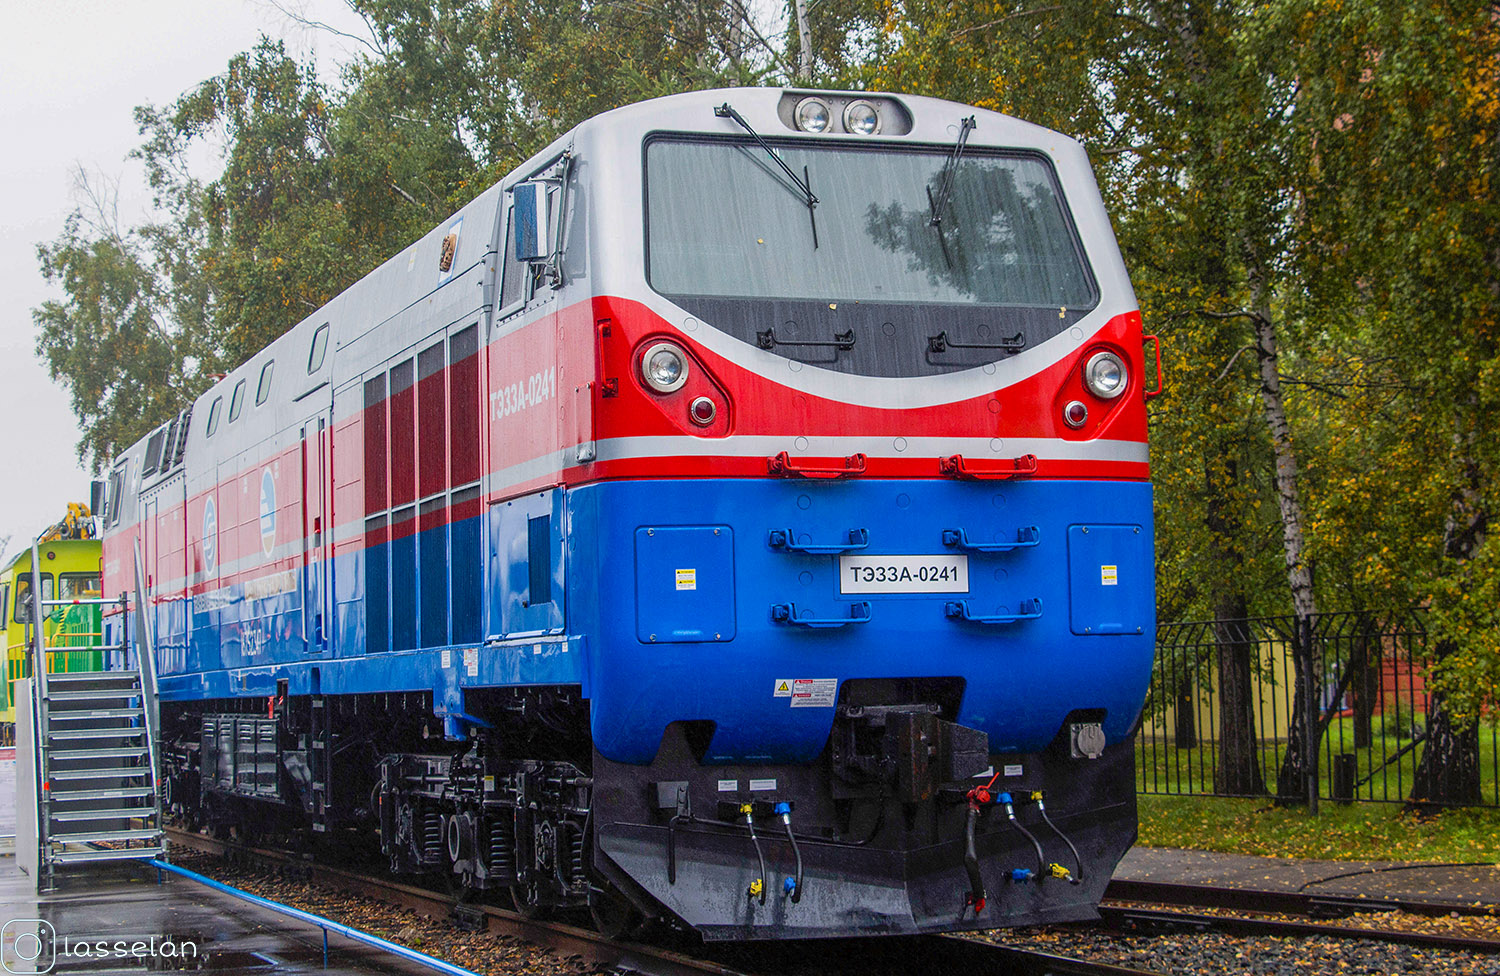 ТЭ33А-0241; Московская железная дорога — IV Международный железнодорожный салон "ЭКСПО 1520" 2013